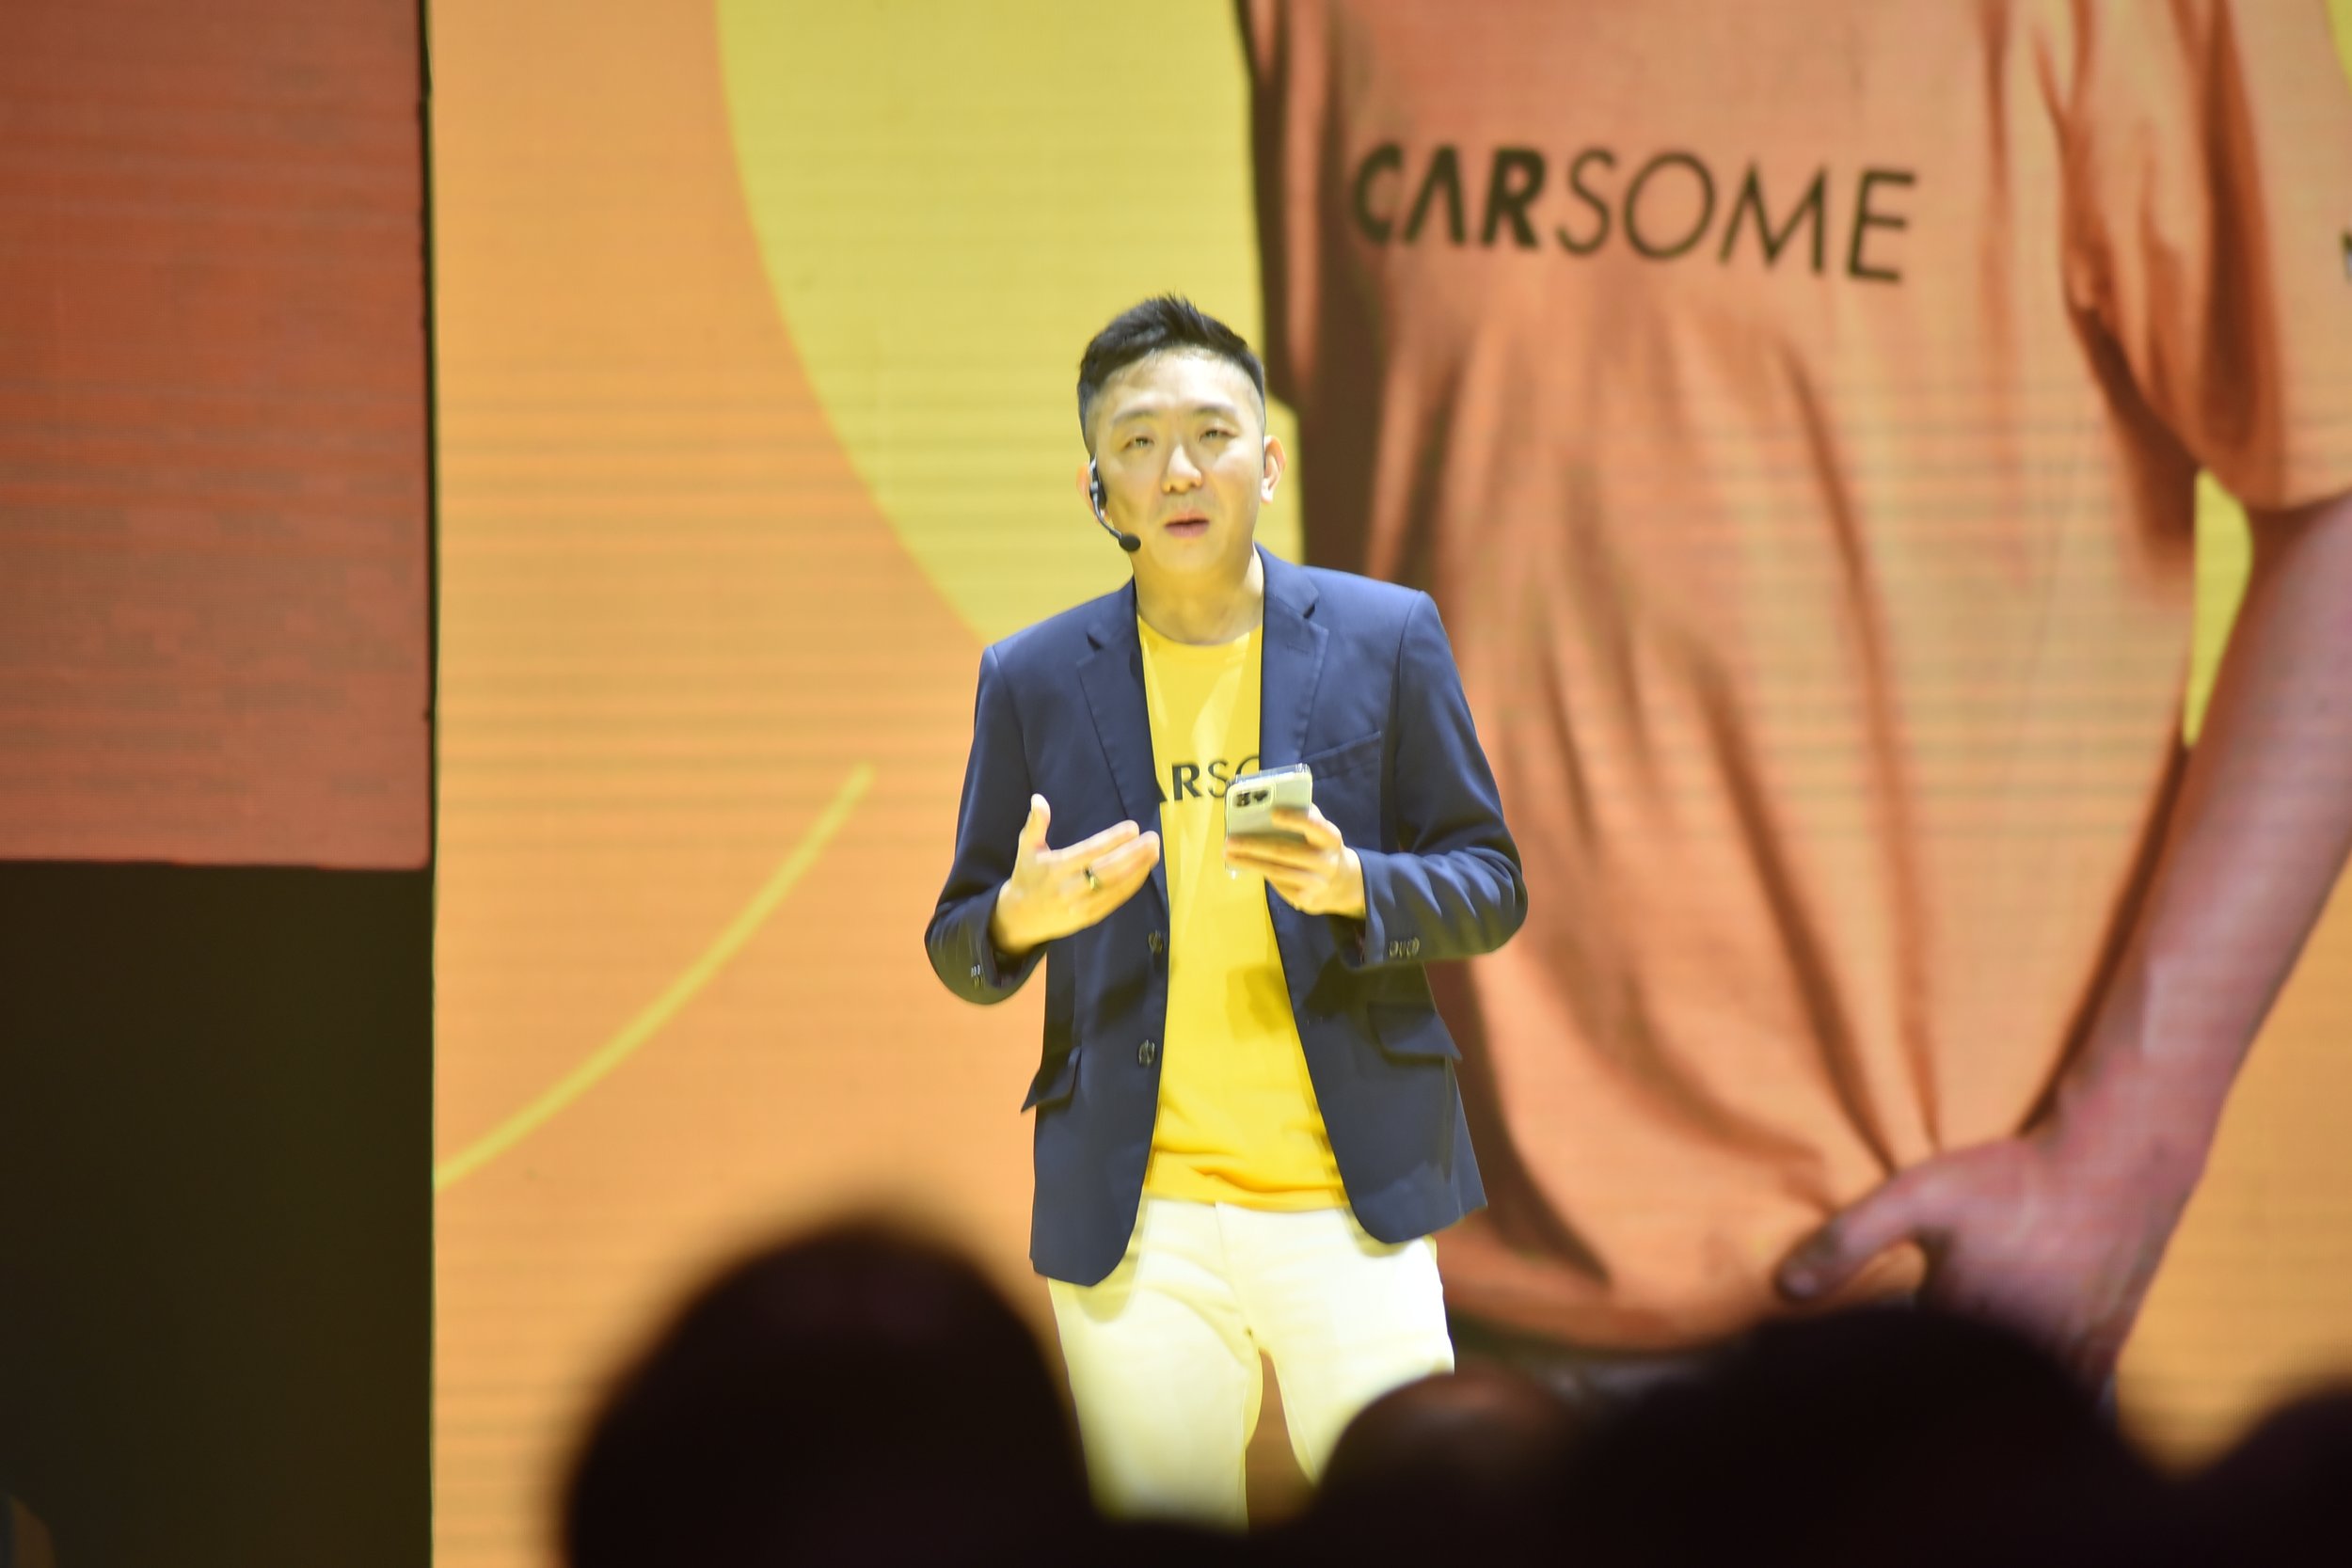  Eric Cheng, CARSOME Co-founder dan Group CEO, memberikan kata sambutan di acara peluncuran CARSOME Certified Lab di Cakung, Jakarta Timur pada Kamis, 8 September 2022 